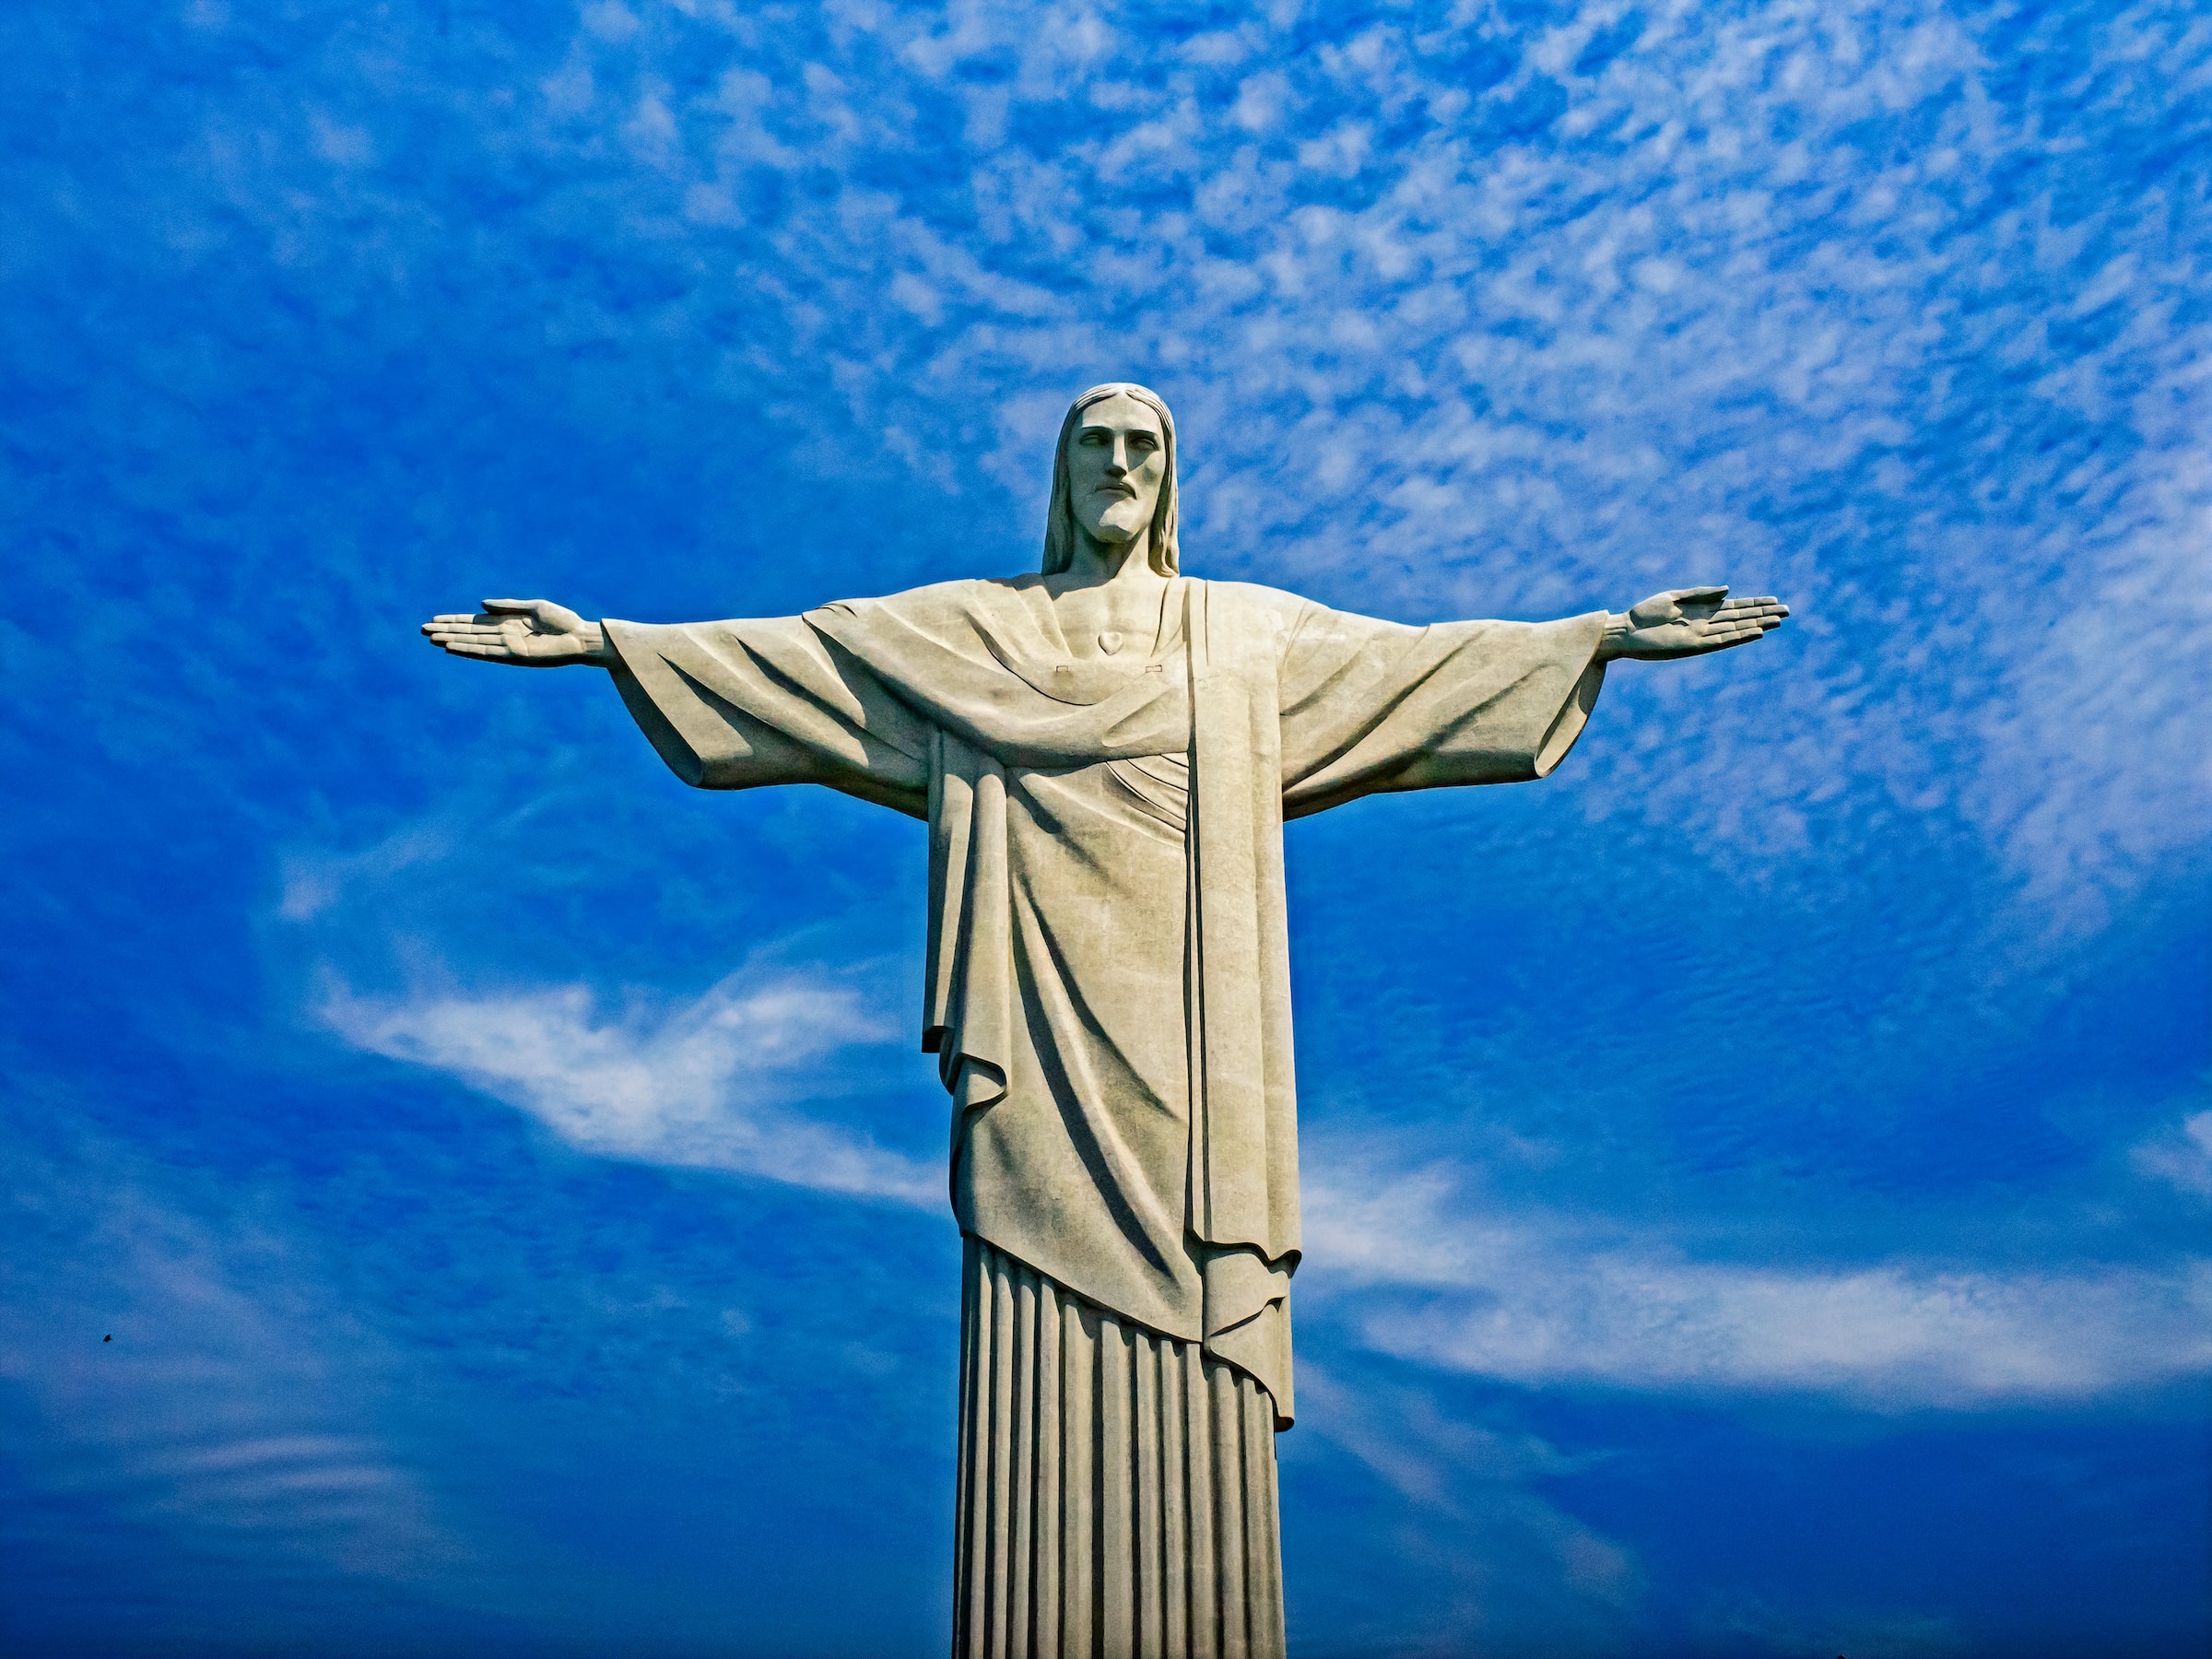 The Cristo Redentor In Rio de Janeiro